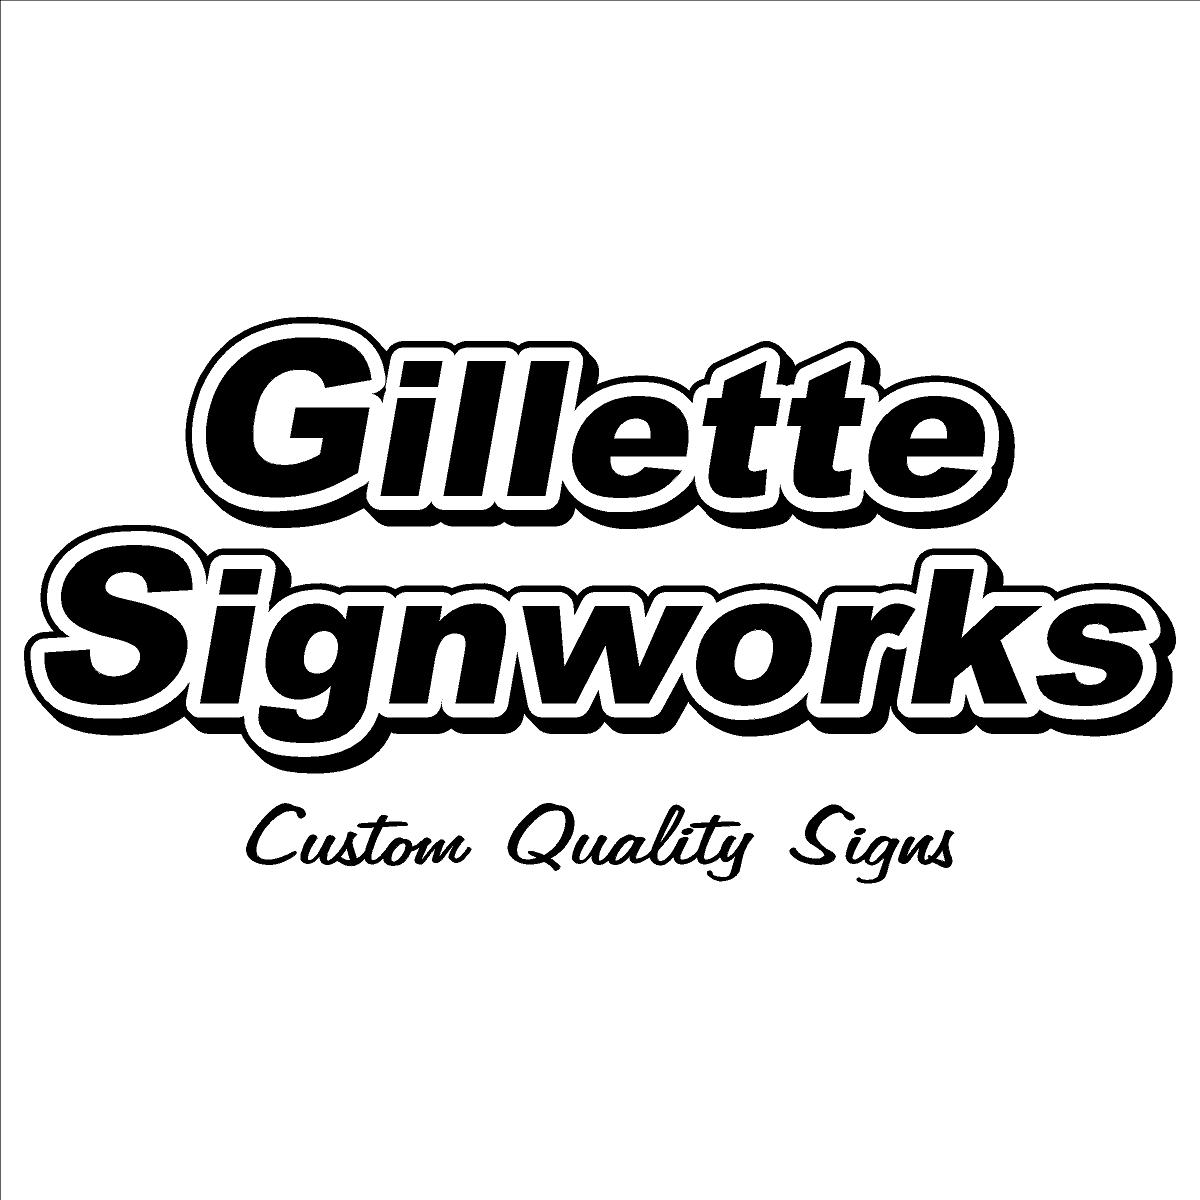 Gillette Signworks LLC's Image